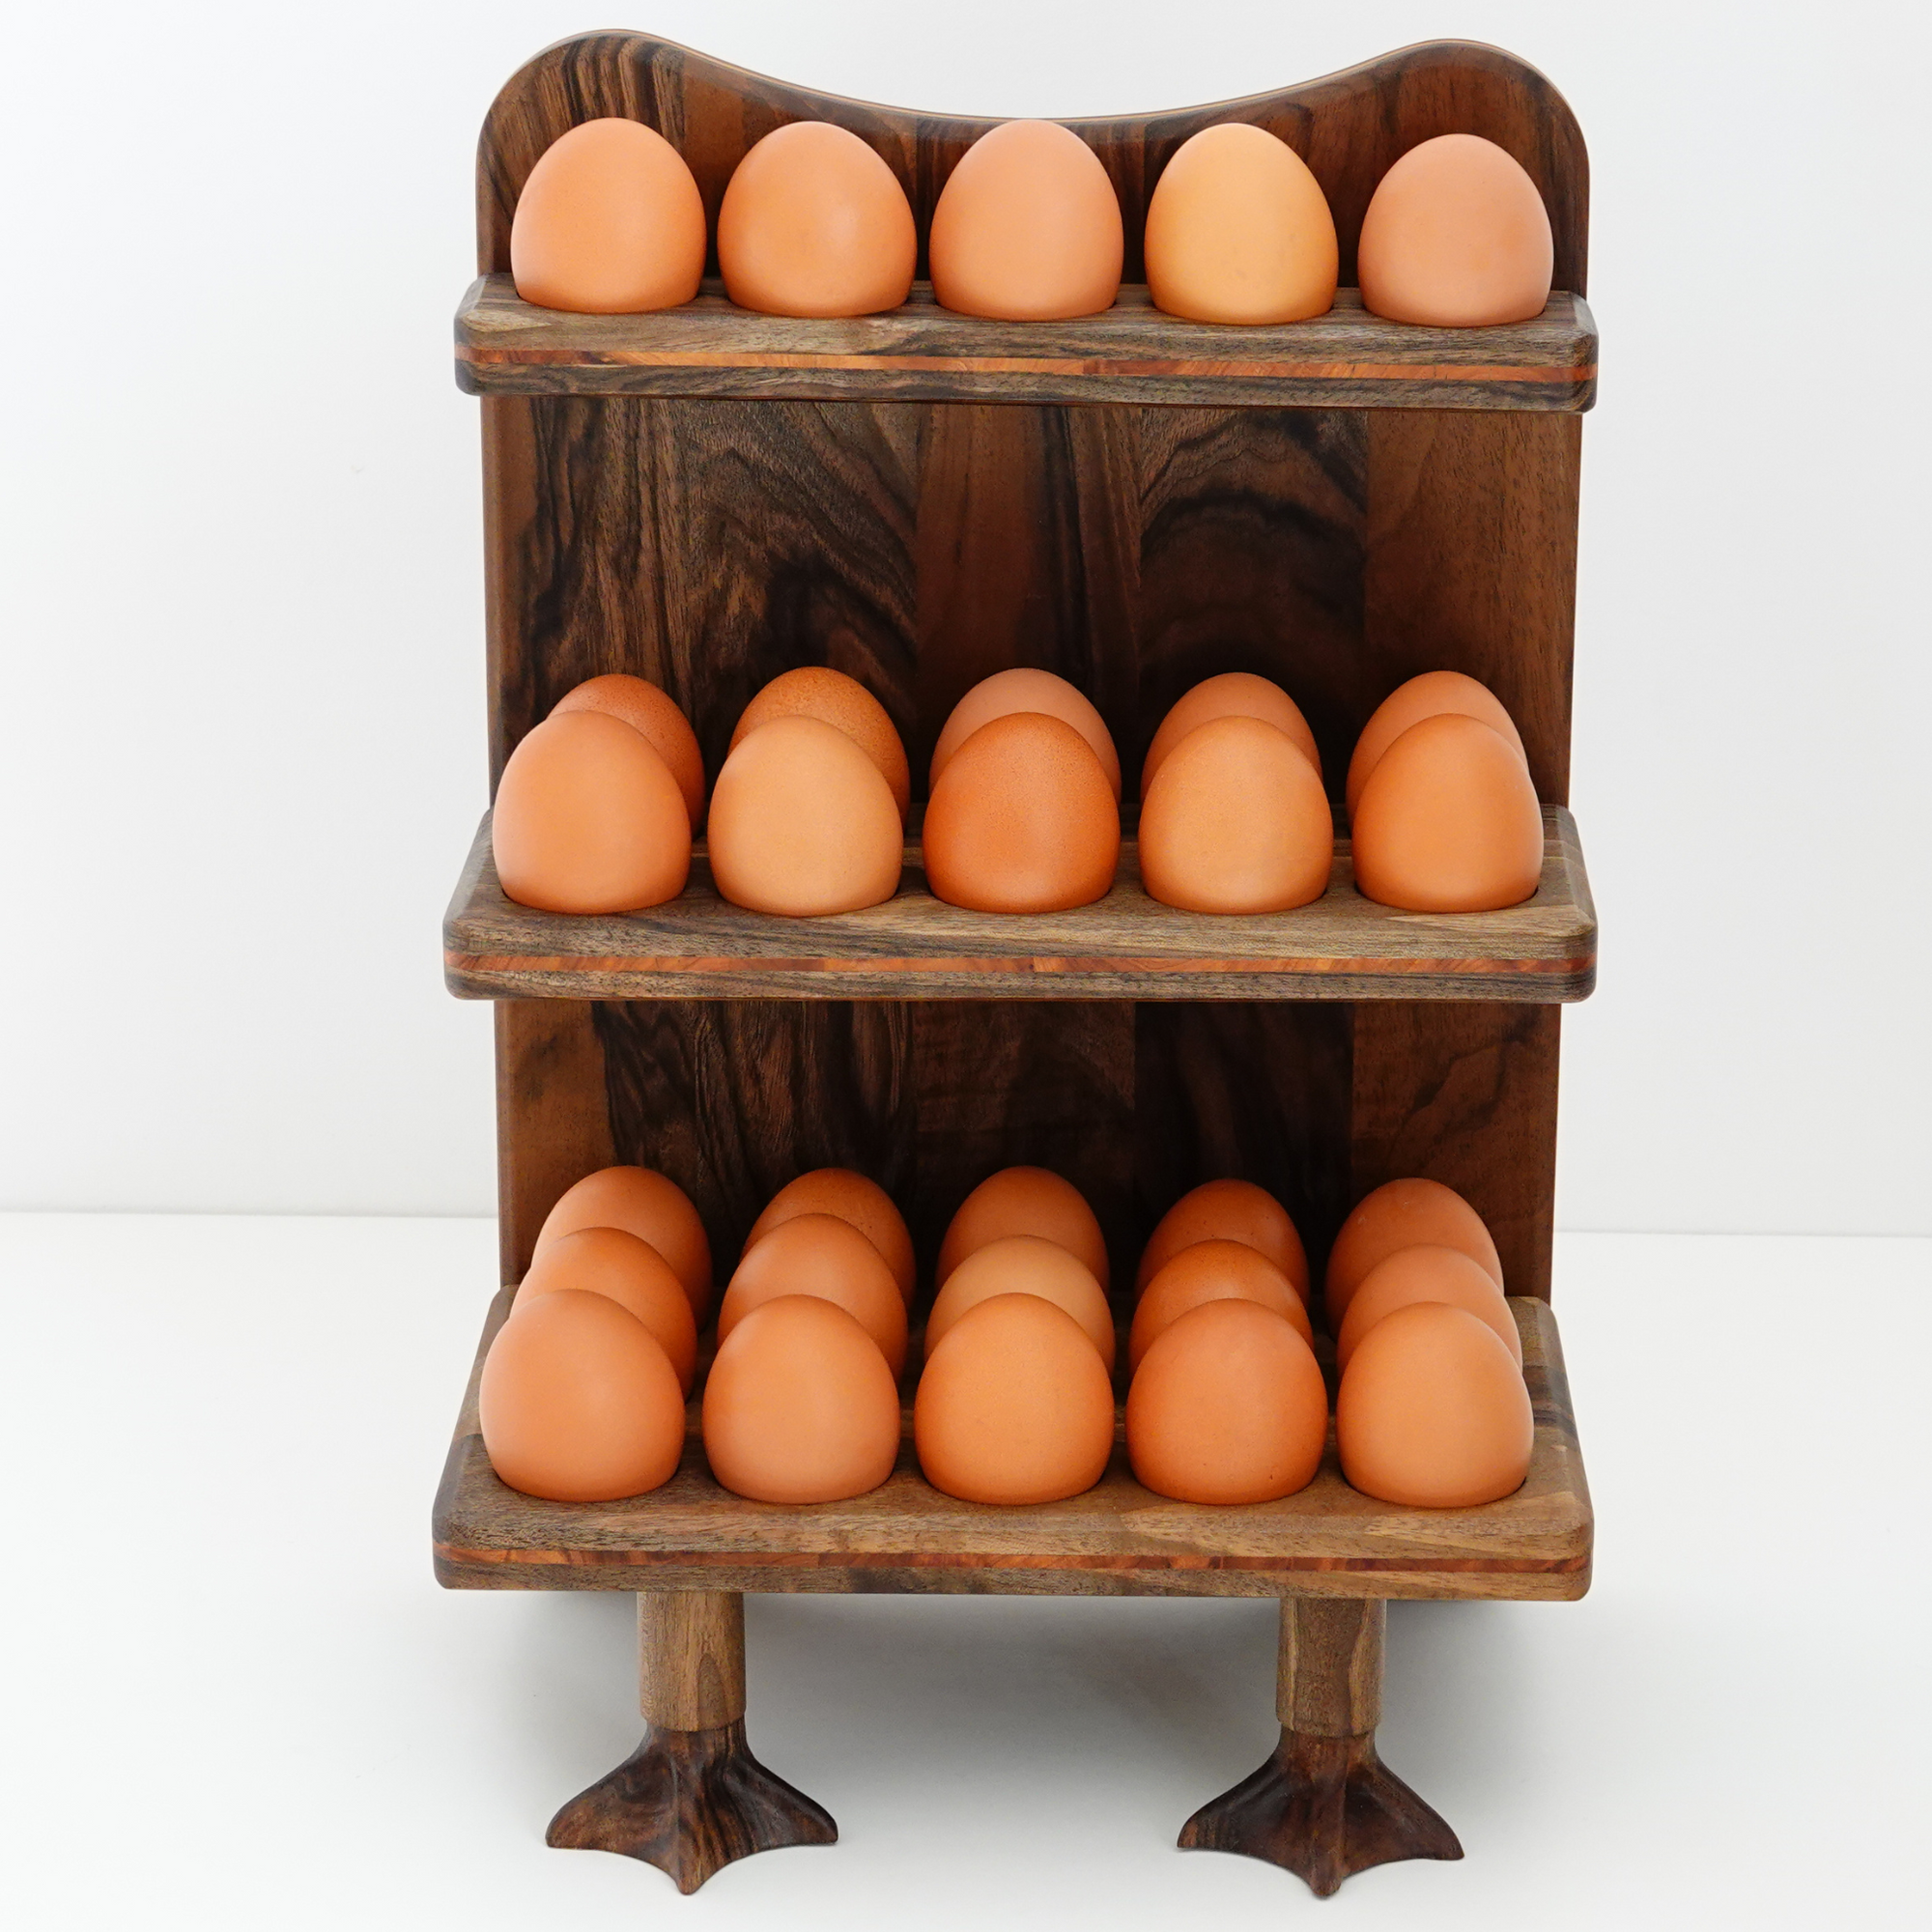 Rustic egg holder. Farmhouse Wood Egg Holder. Egg stand. Wooden